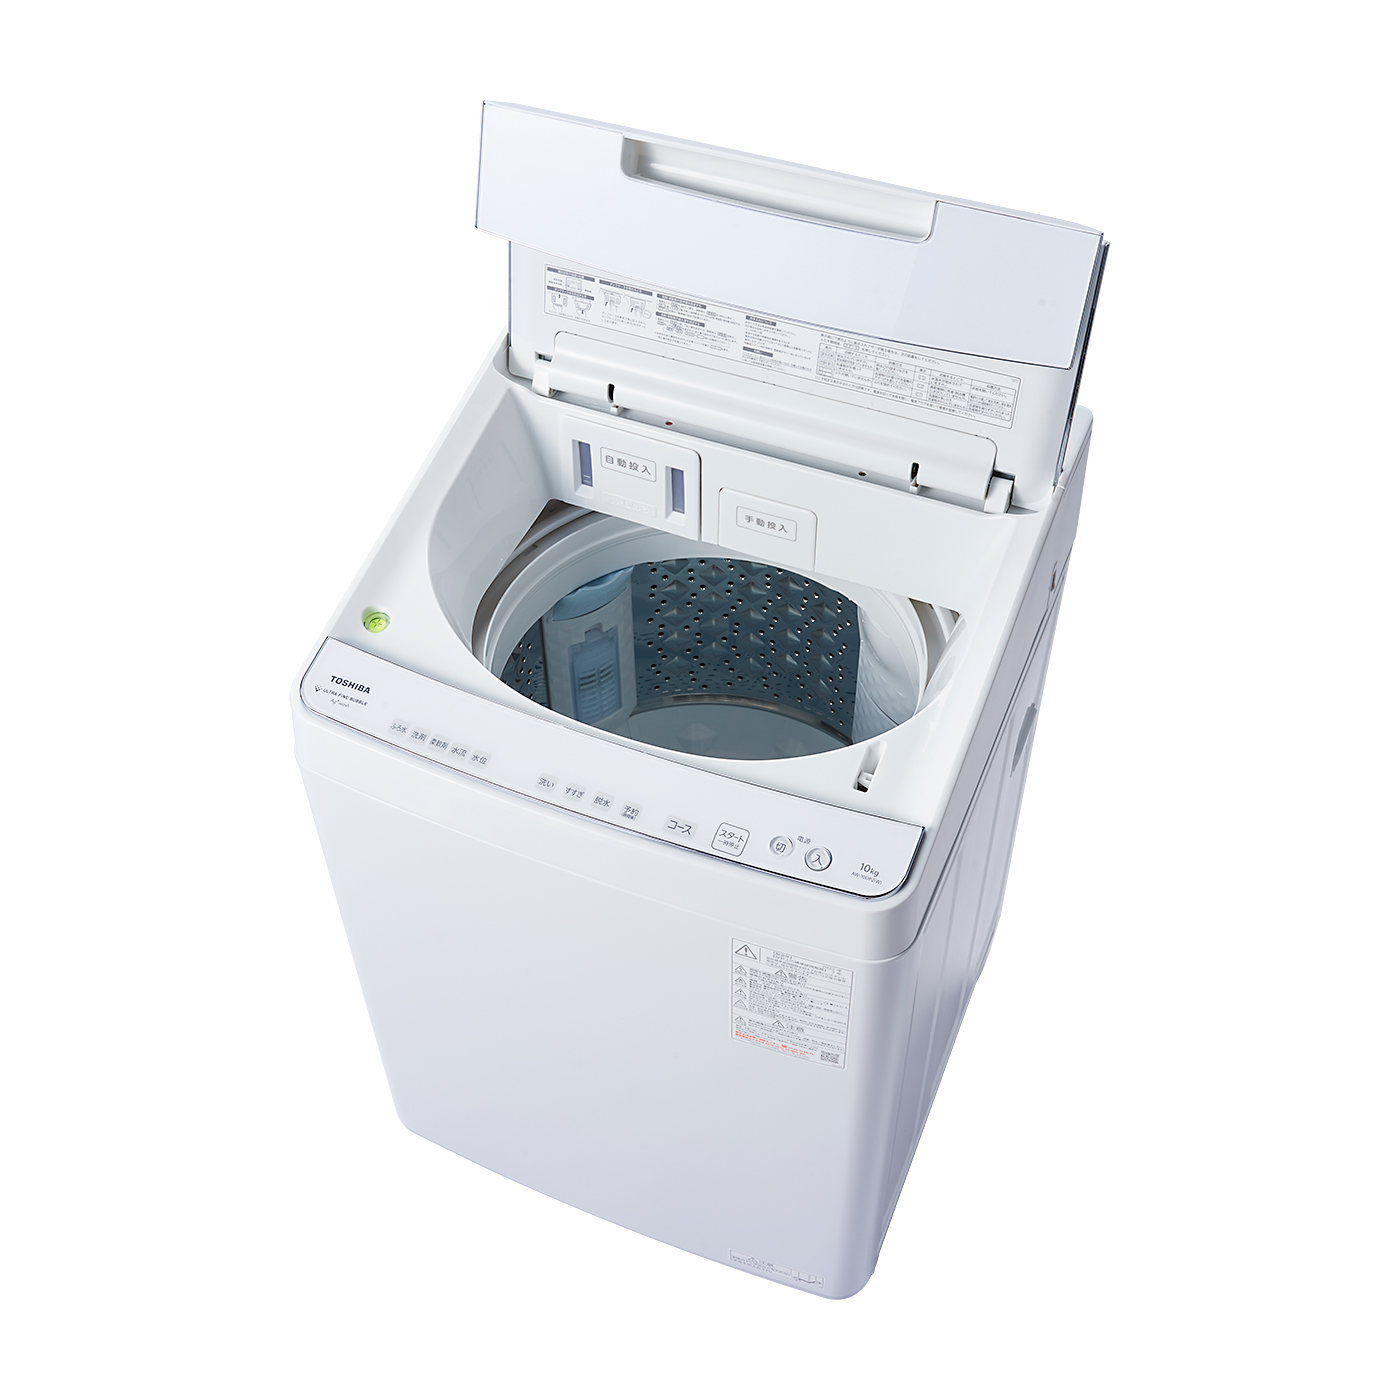 東芝全自動電気洗濯機 TOSHIBA AW-10SD7(T) - 洗濯機